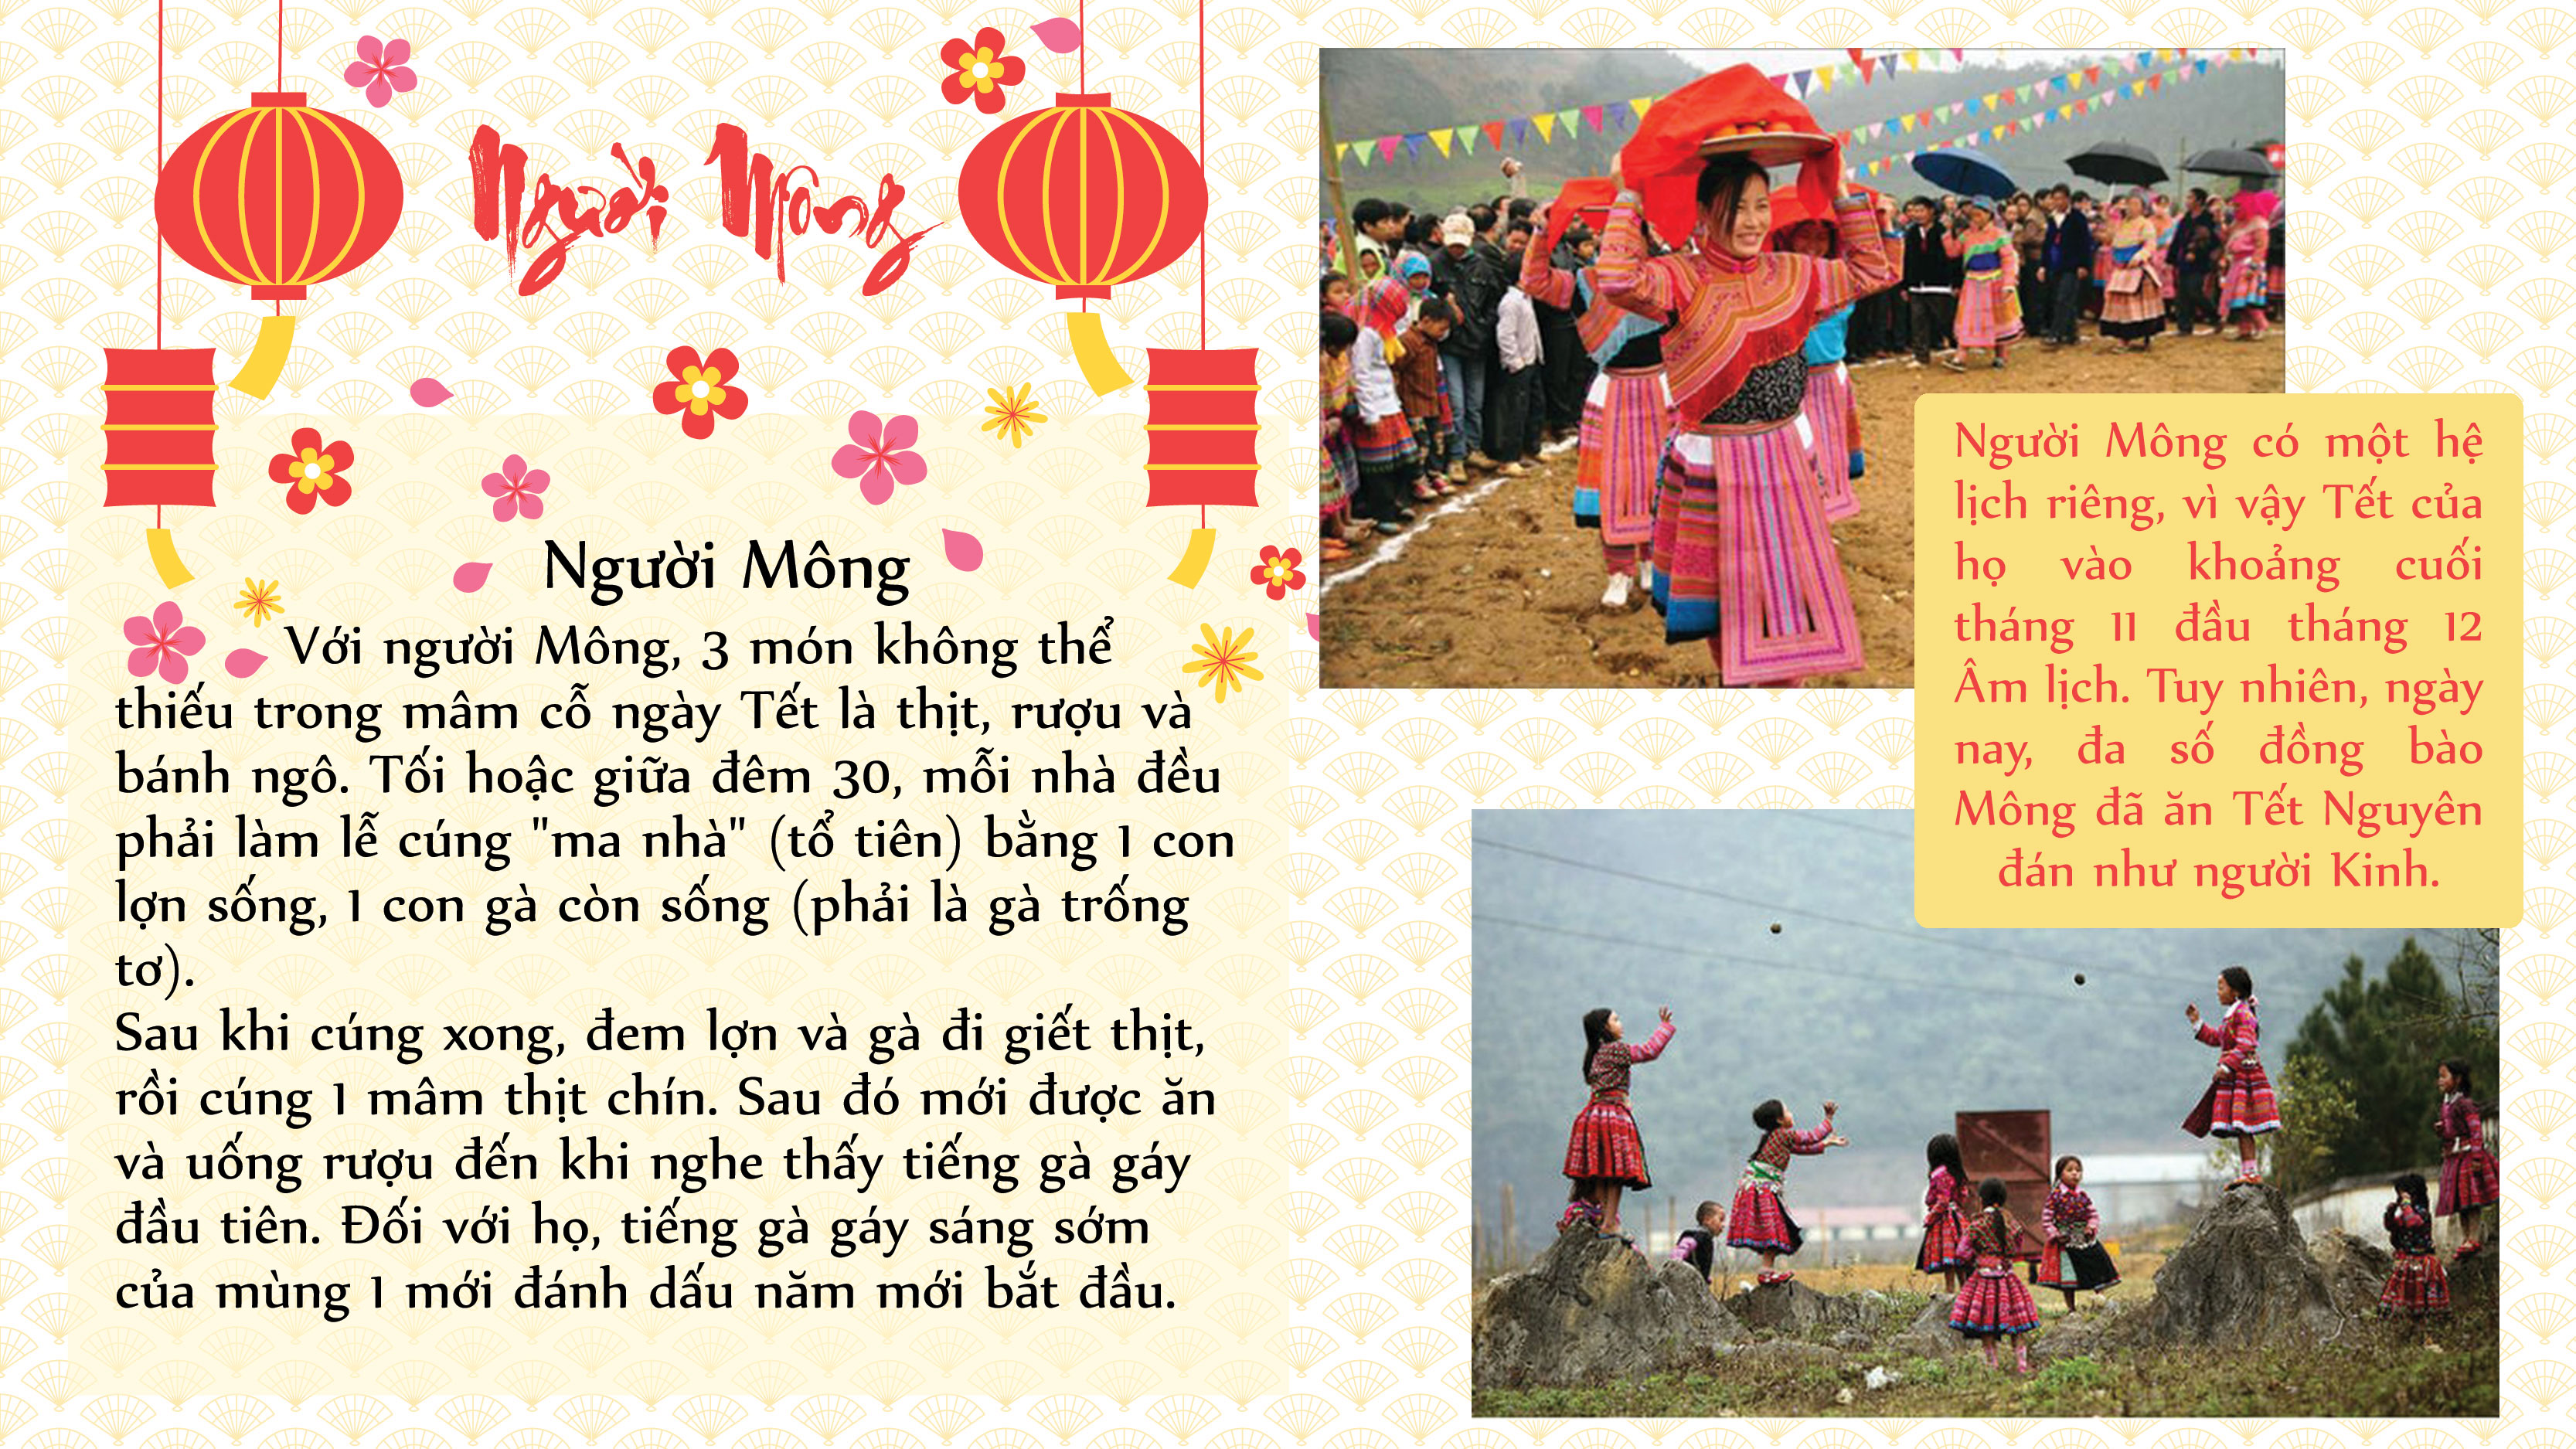 Phong tục lạ trong ngày Tết Nguyên đán của một số dân tộc Việt Nam - 11